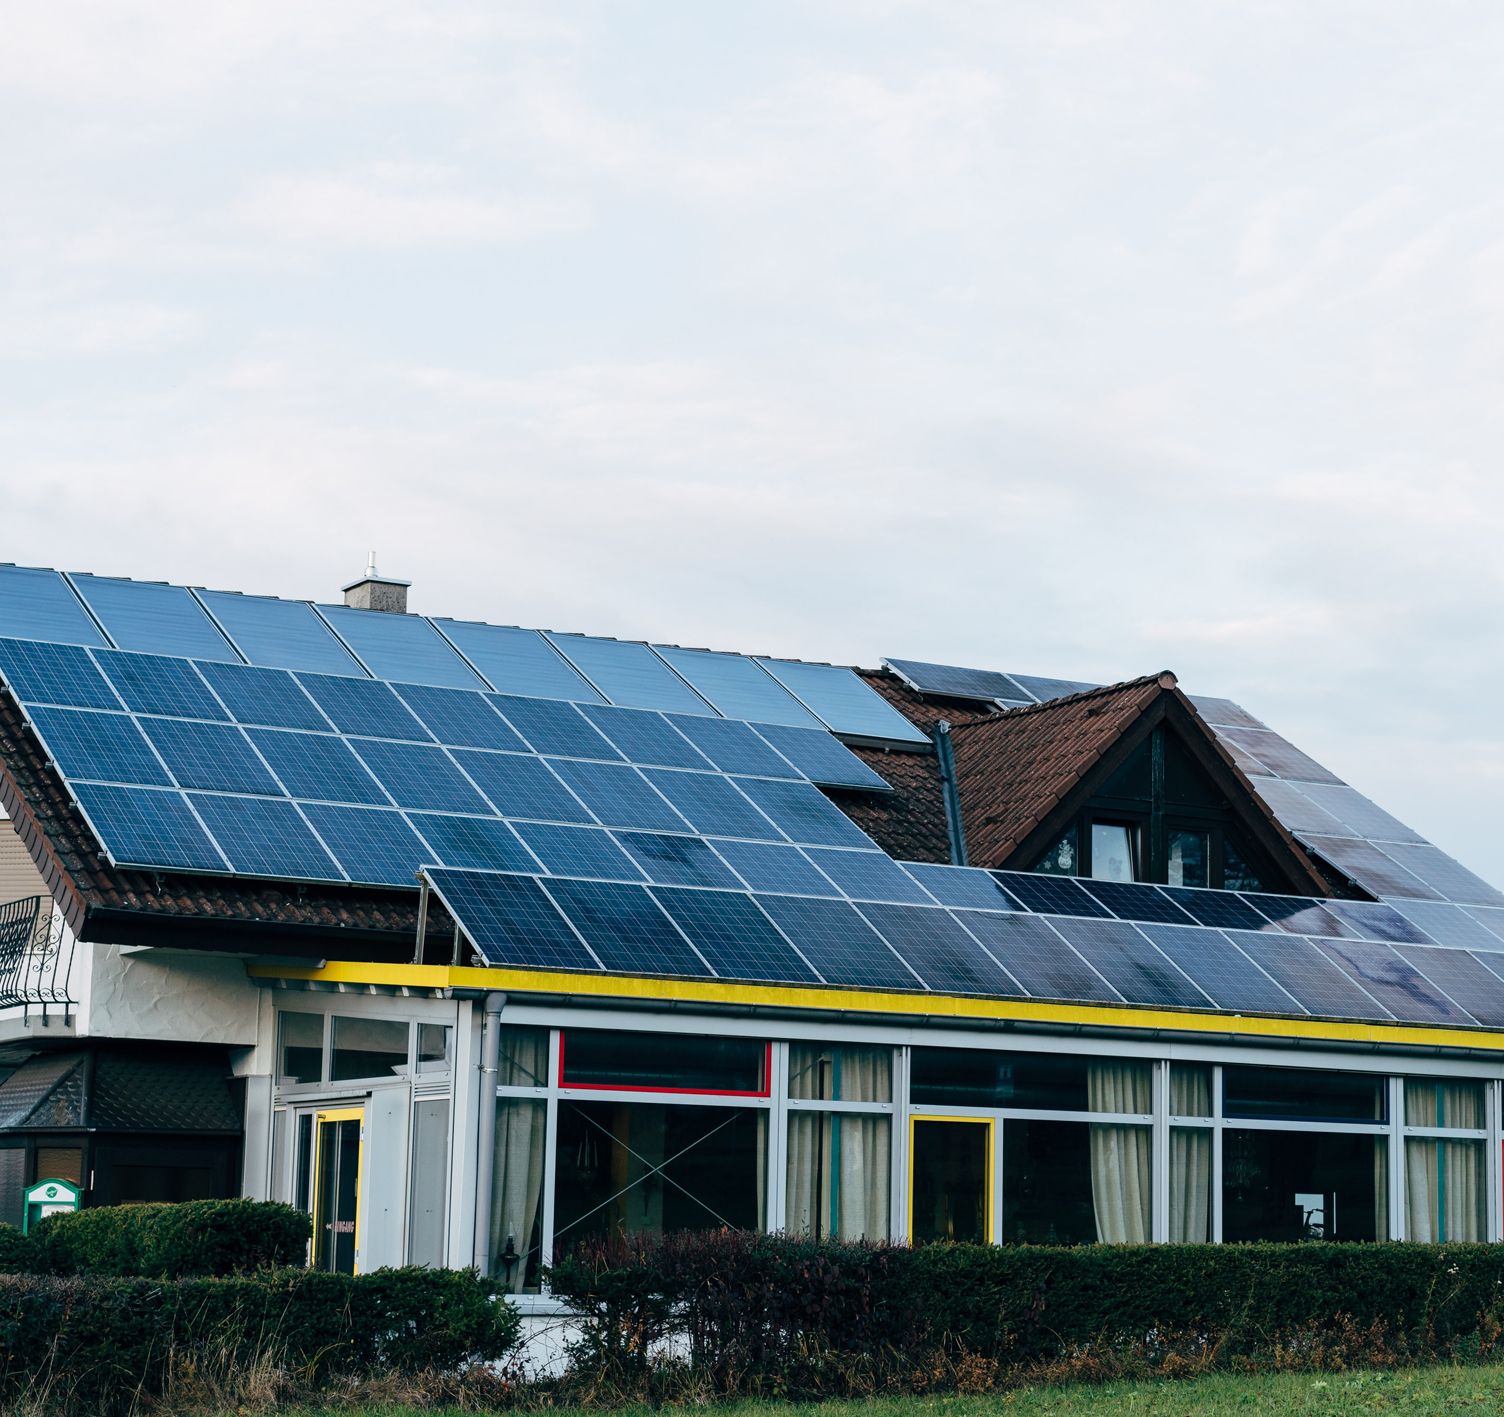 SOLARHEATING teljesen elektromos fűtési rendszerek tervezése és kiépítése napelem rendszerrel kombinálva.